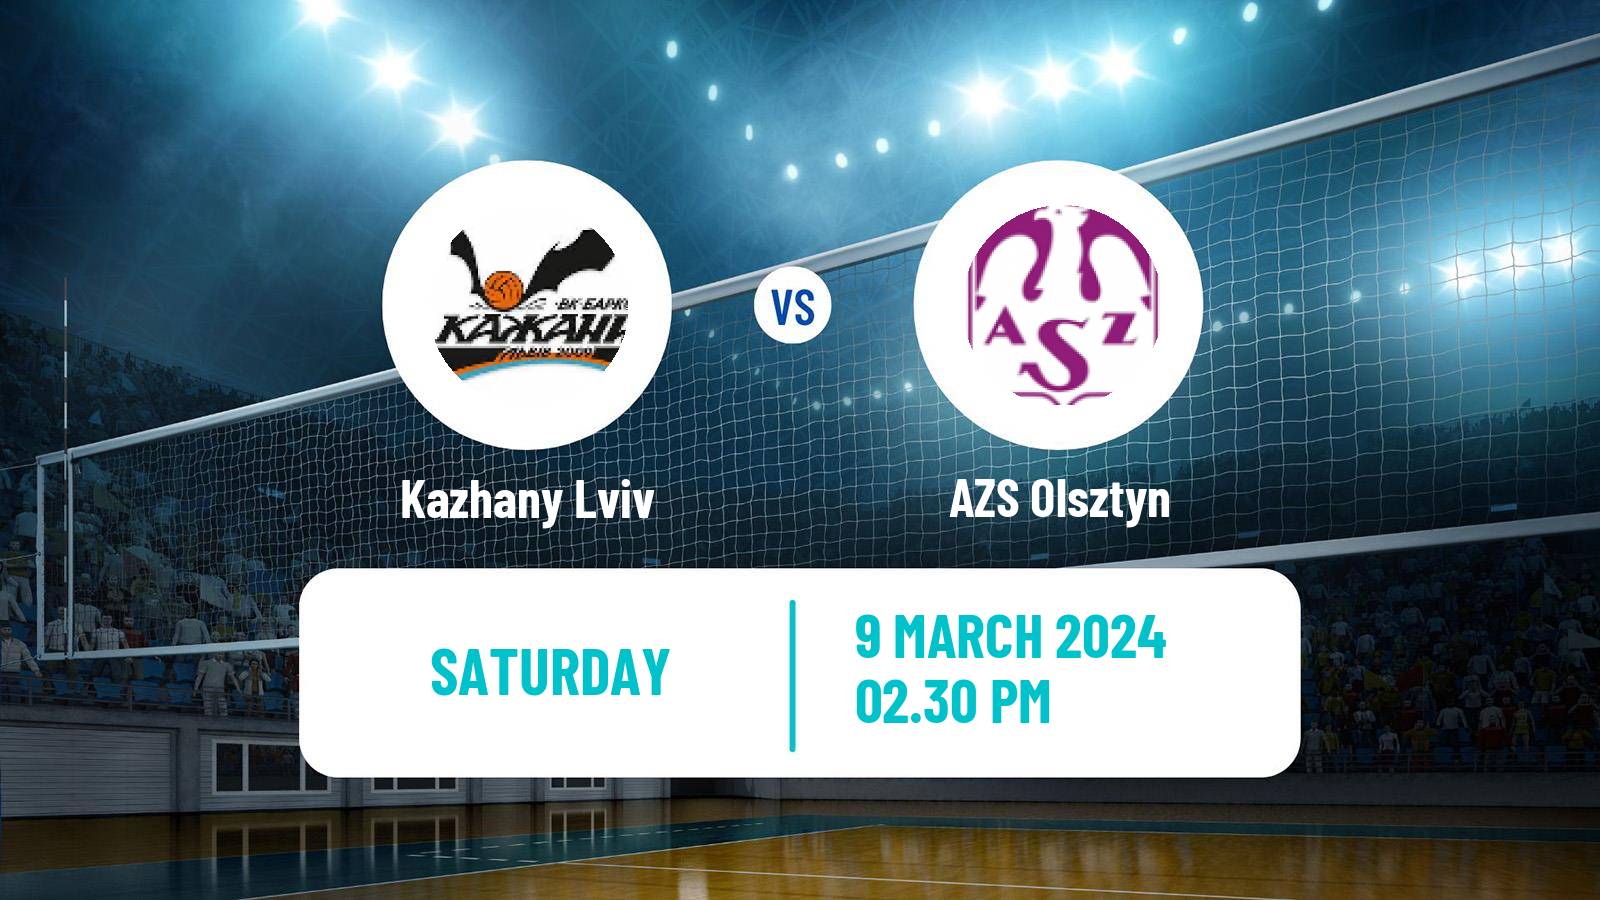 Volleyball Polish PlusLiga Kazhany Lviv - AZS Olsztyn